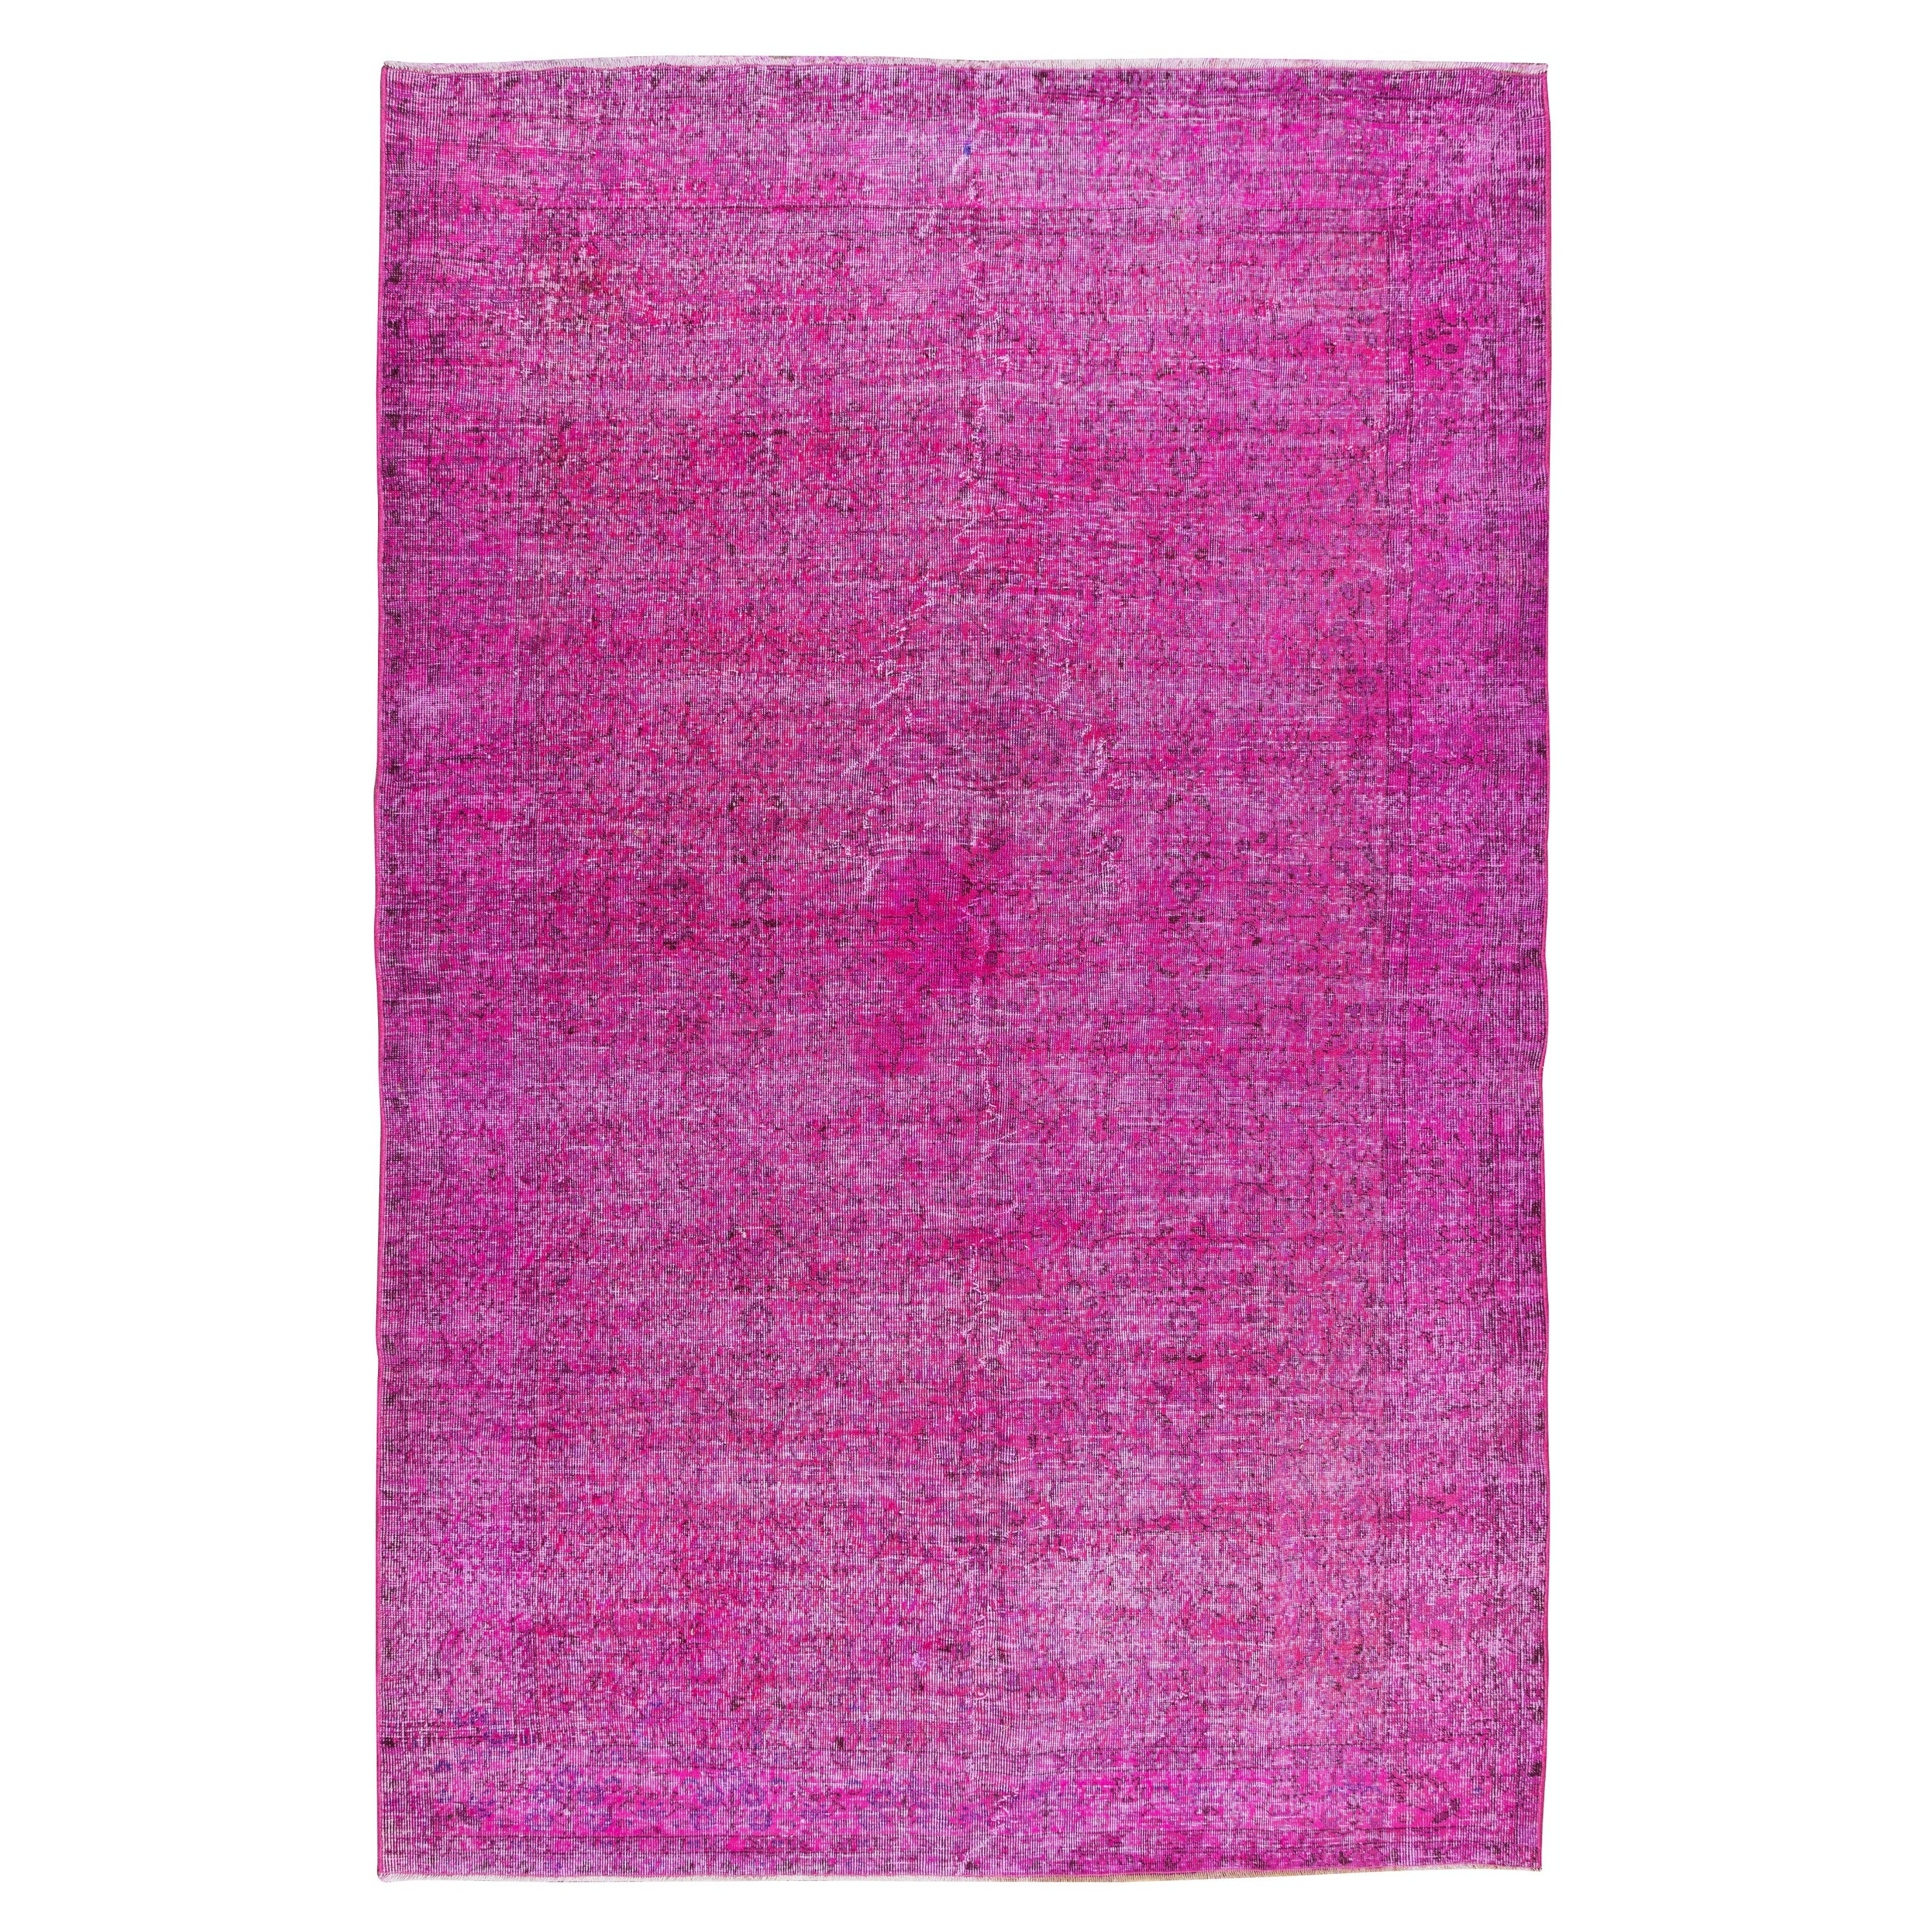 6.7x10.4 Ft Hand geknüpft anatolischen Bereich Teppich in Fuchsia Pink 4 Modern Interiors